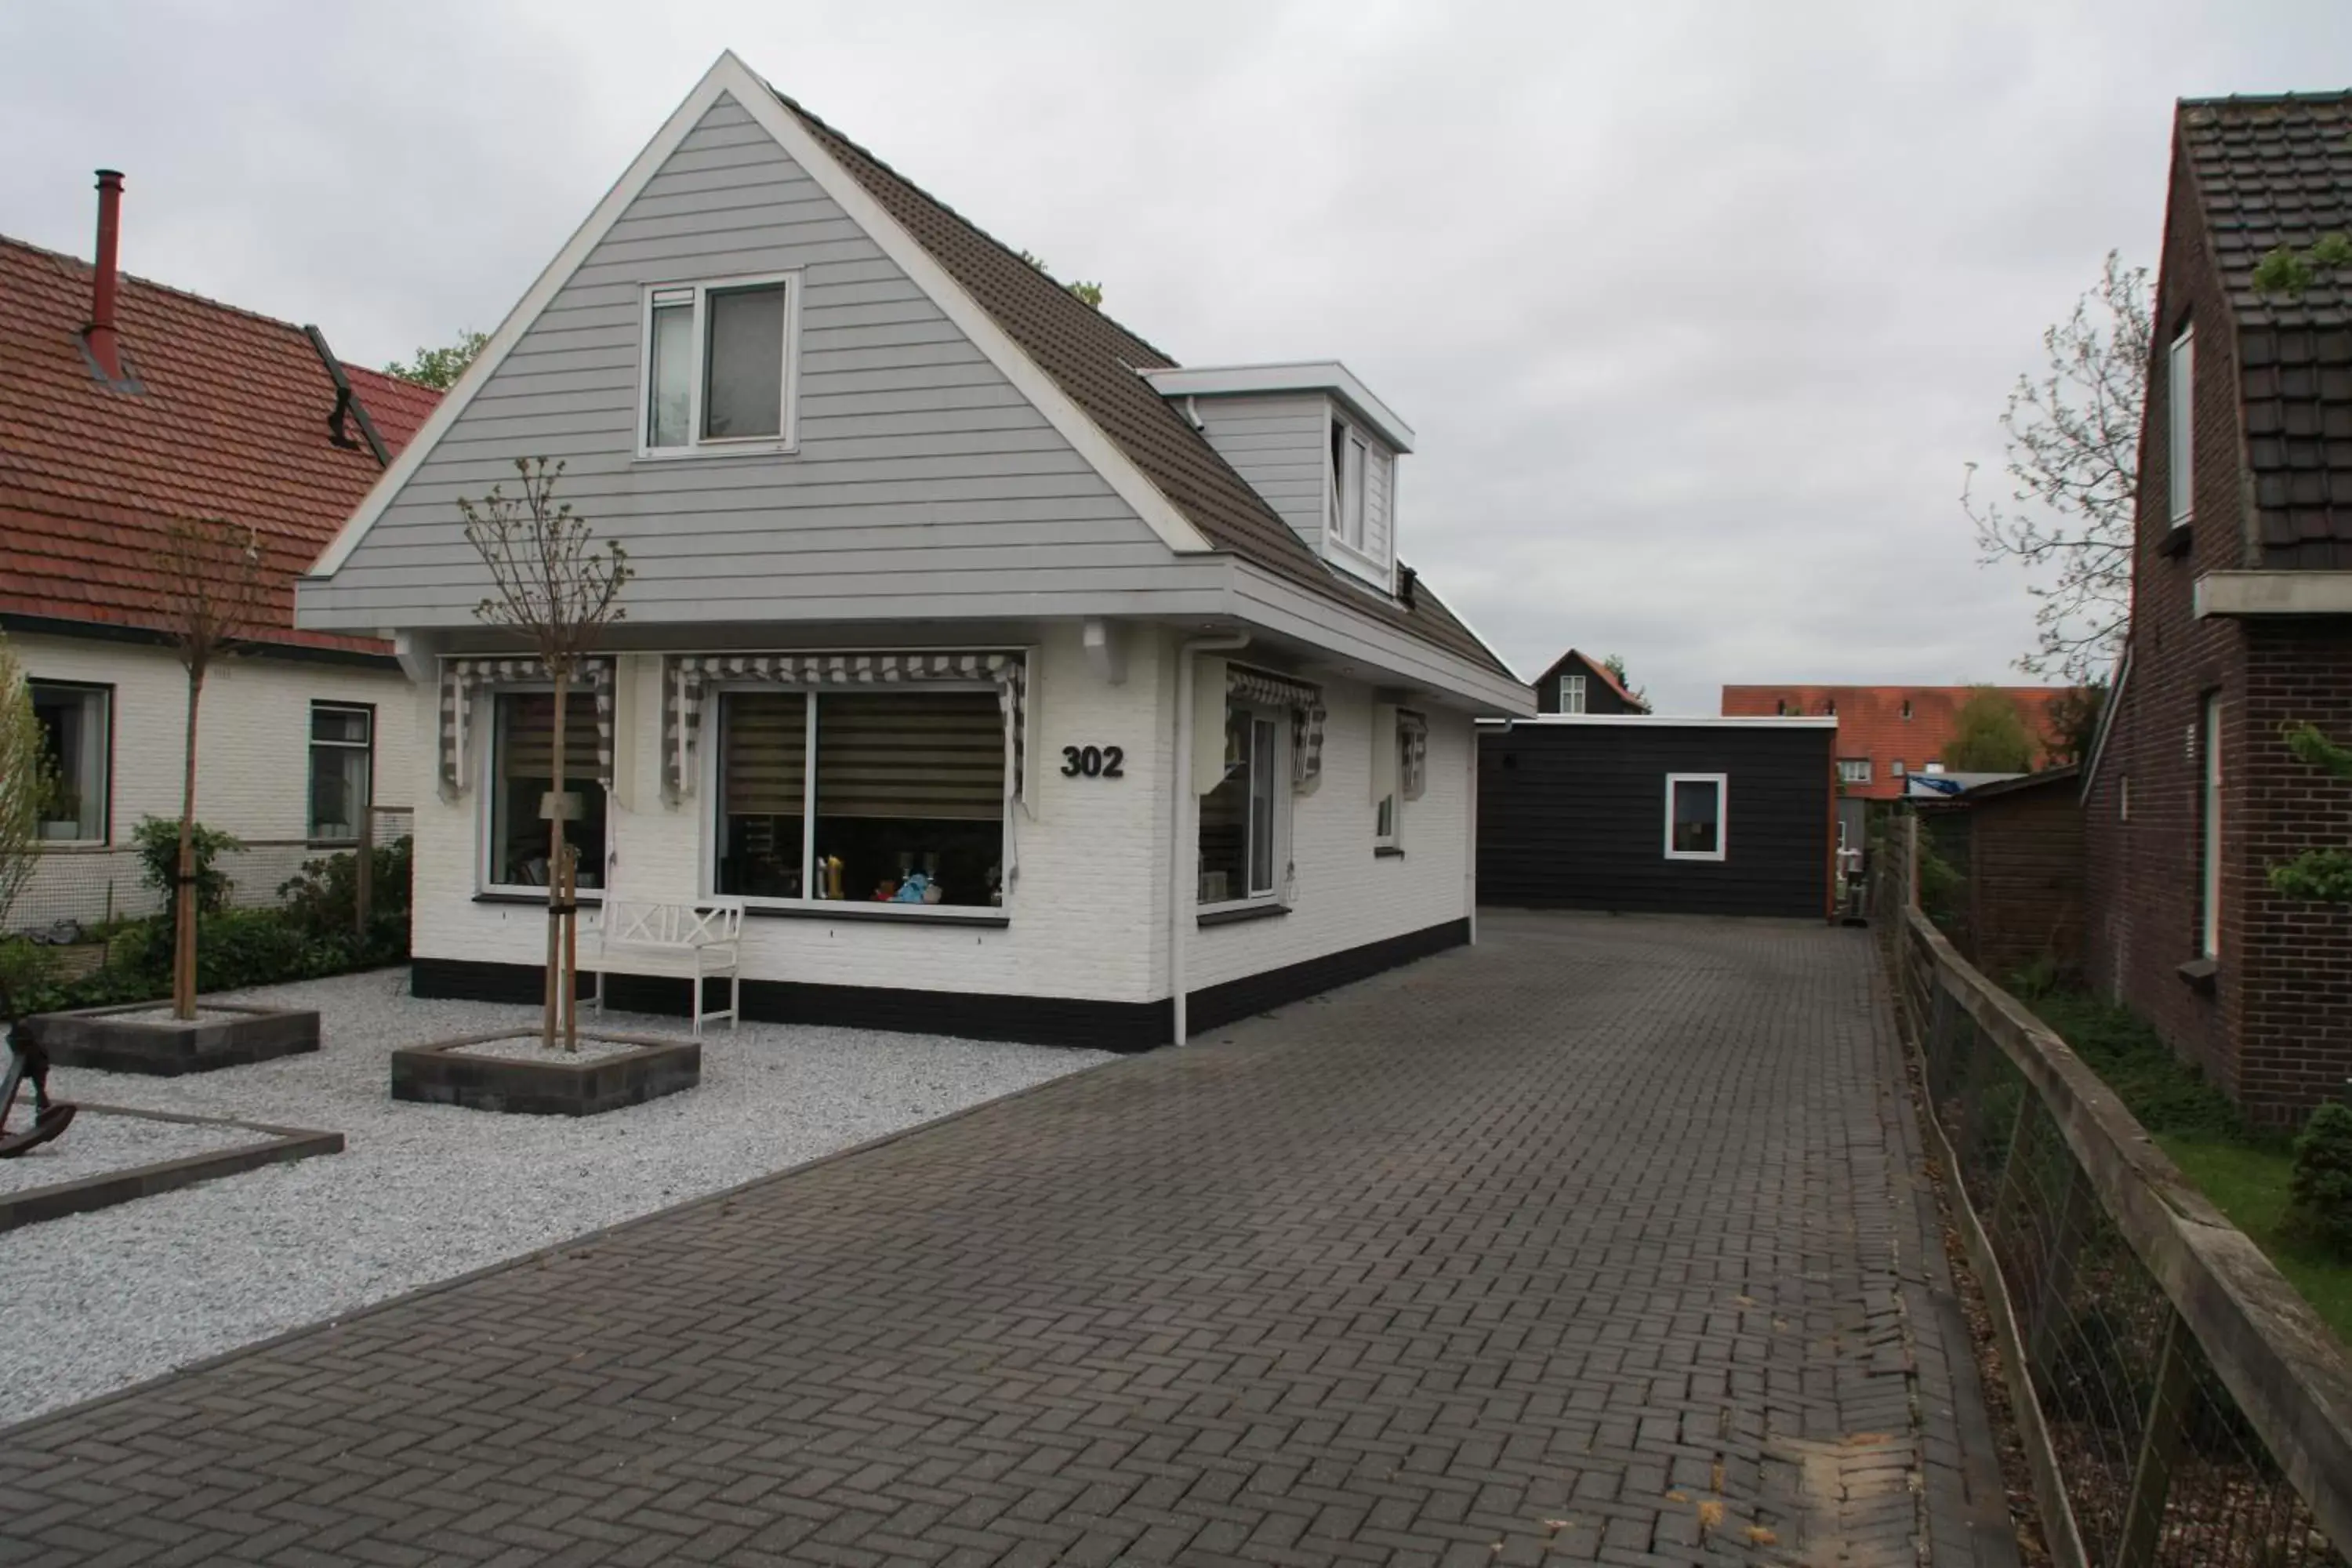 Neighbourhood, Property Building in Bed & Breakfast Aalsmeer